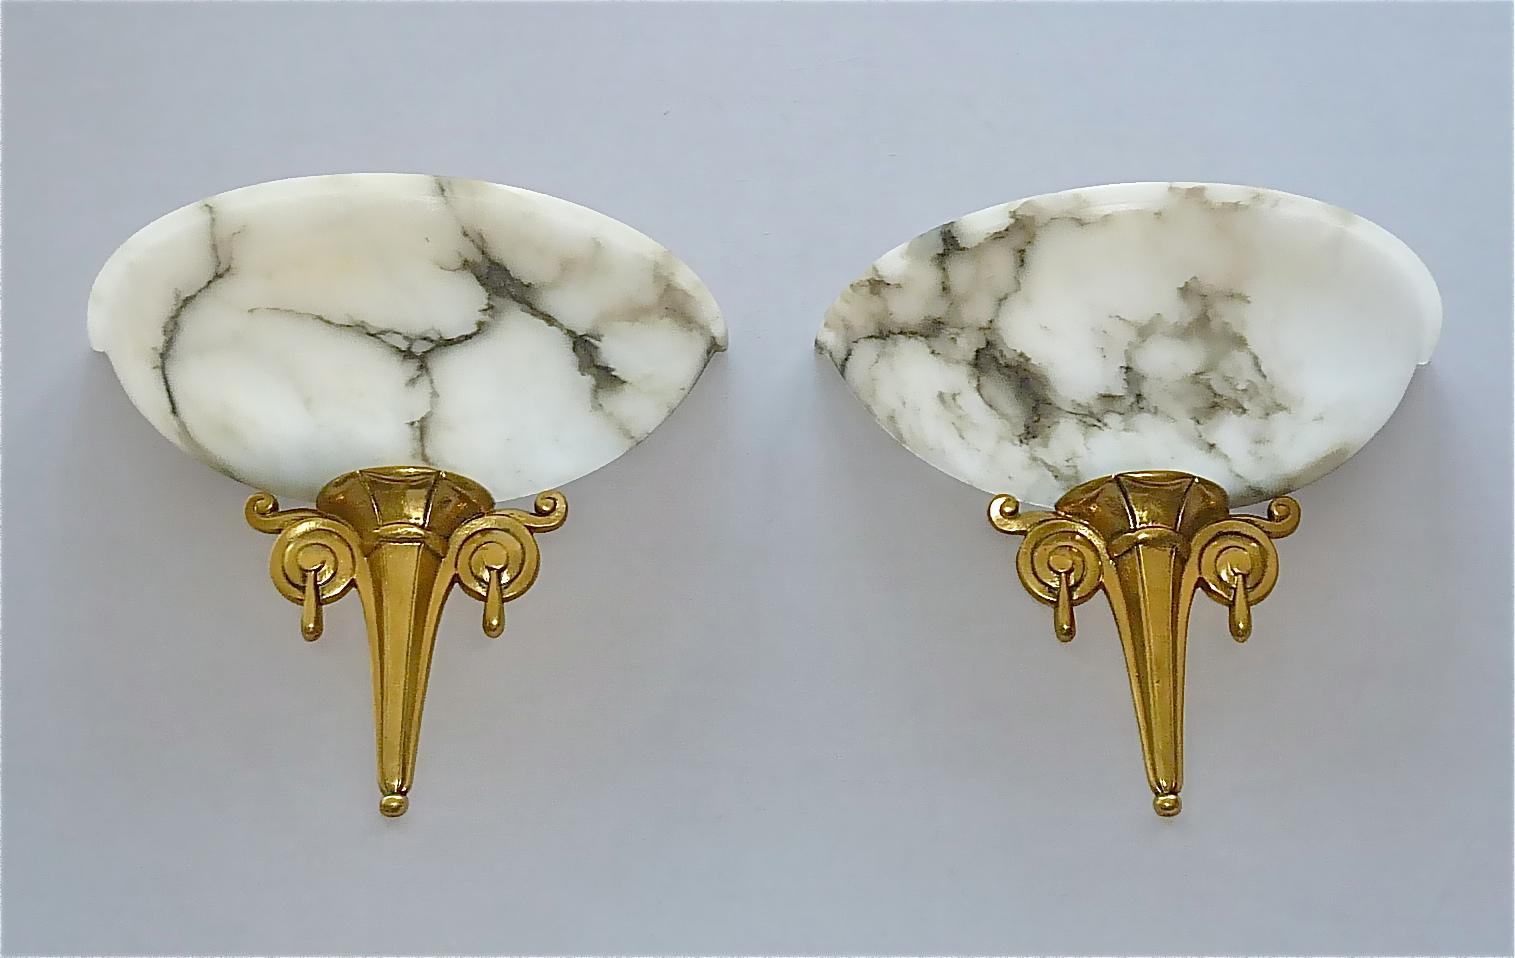 Unique French Art Deco Alabaster Sconces 1920s Gilt Bronze Ruhlmann Cheuret Era For Sale 3